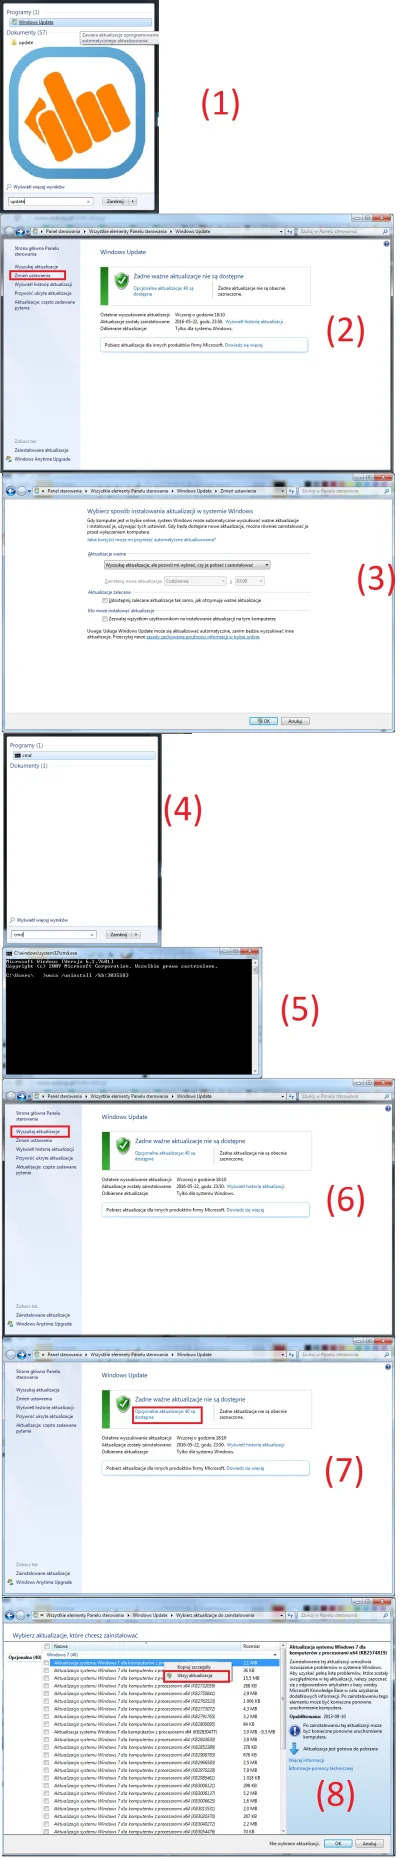 lubiewachacstopysiostrze997 - TL;DR instrukcja usunięcia spamu o windows 10 z windows...